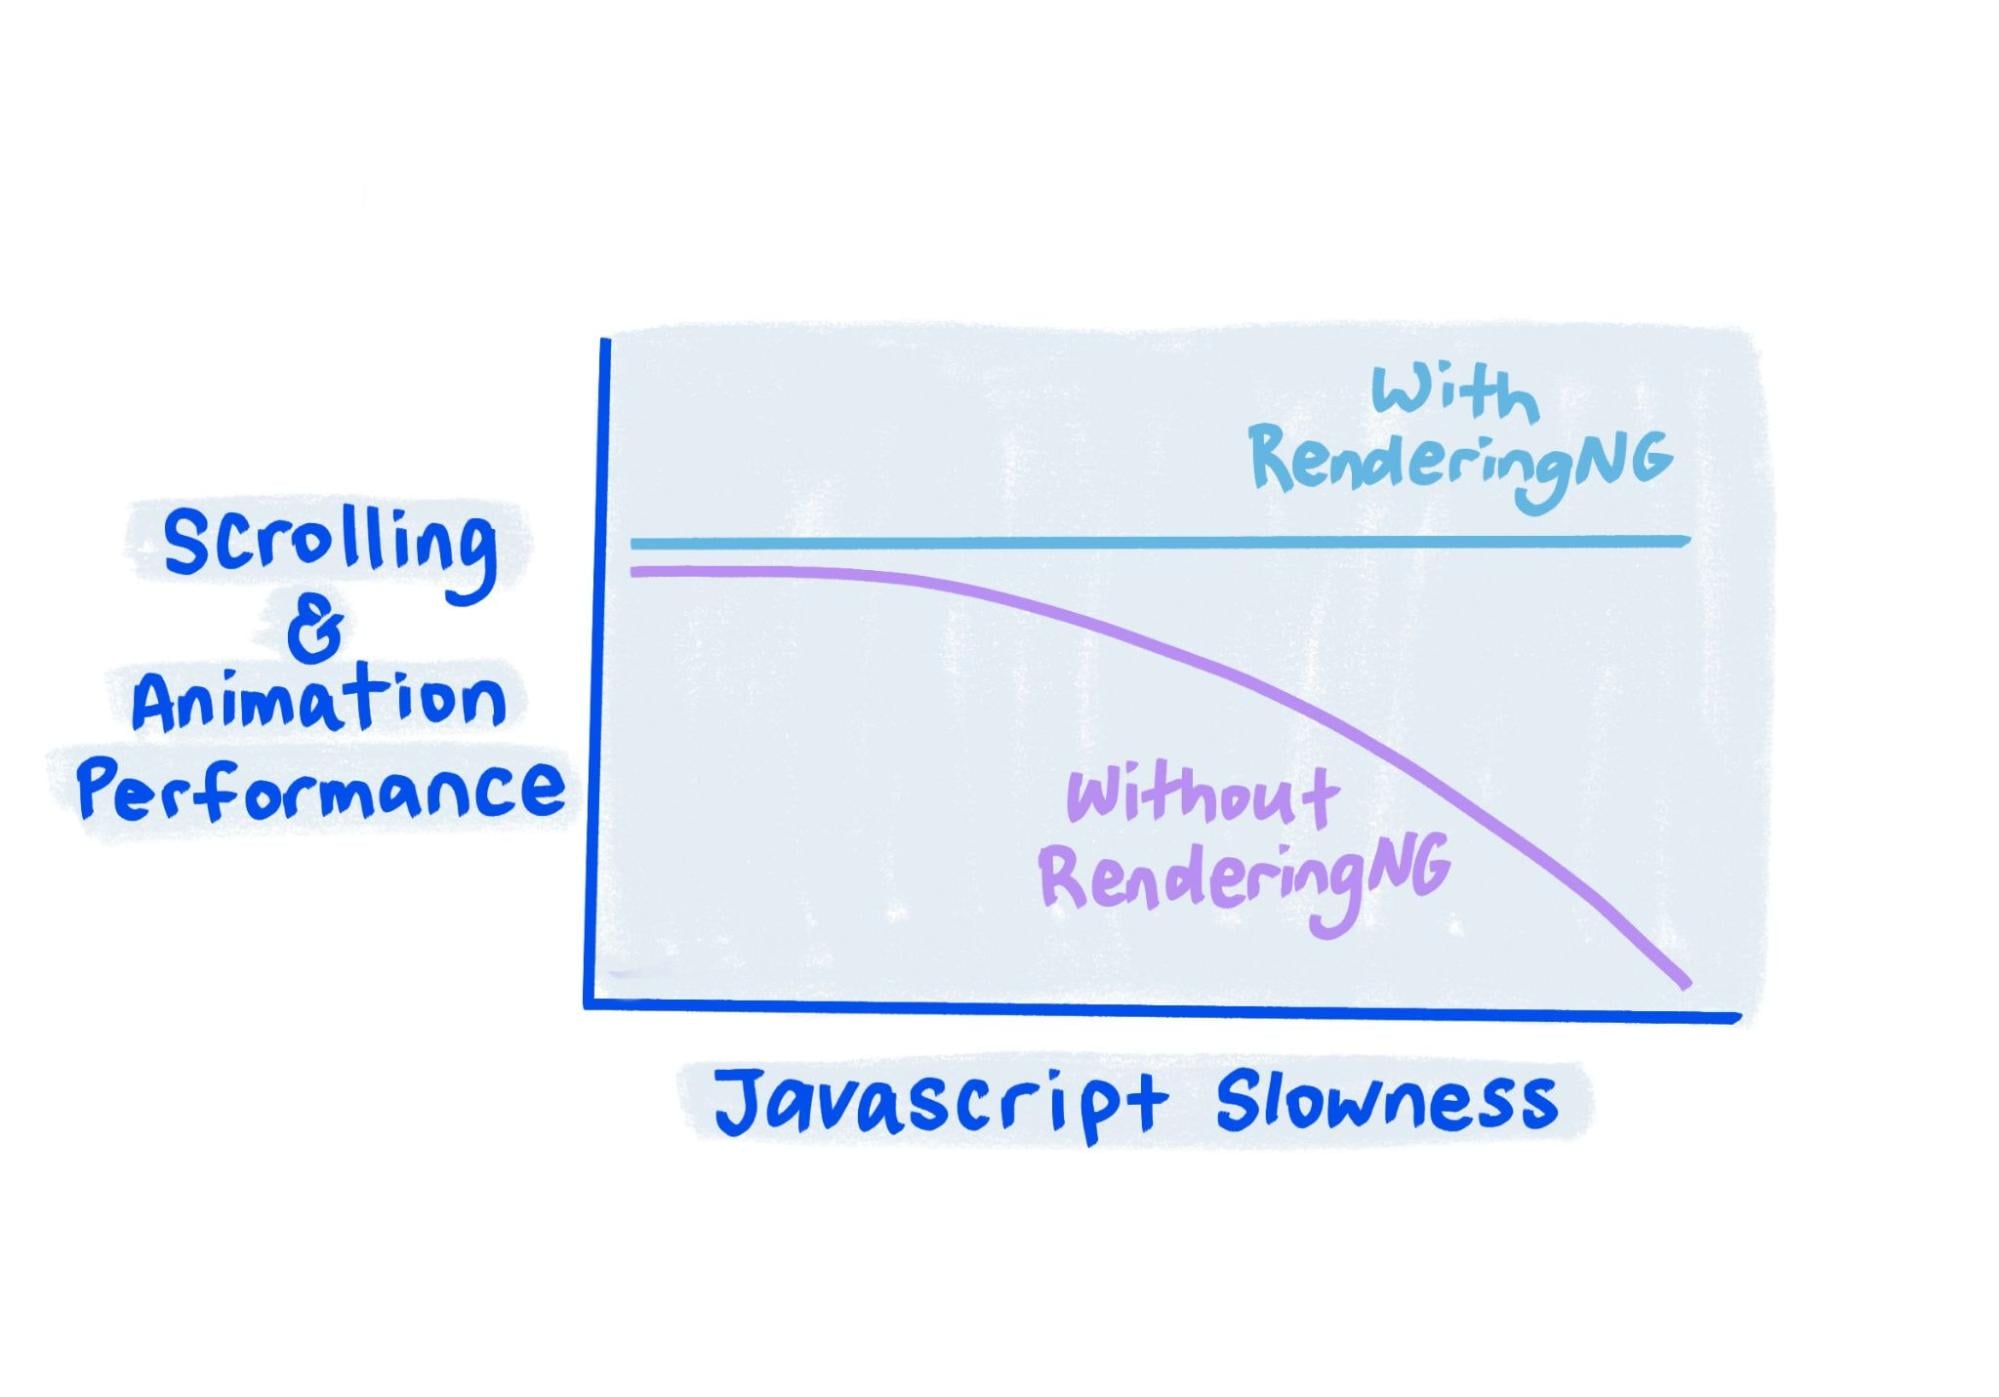 Die Skizze zeigt, dass die Leistung bei RenderingNG auch bei sehr langsamem JavaScript konstant bleibt.